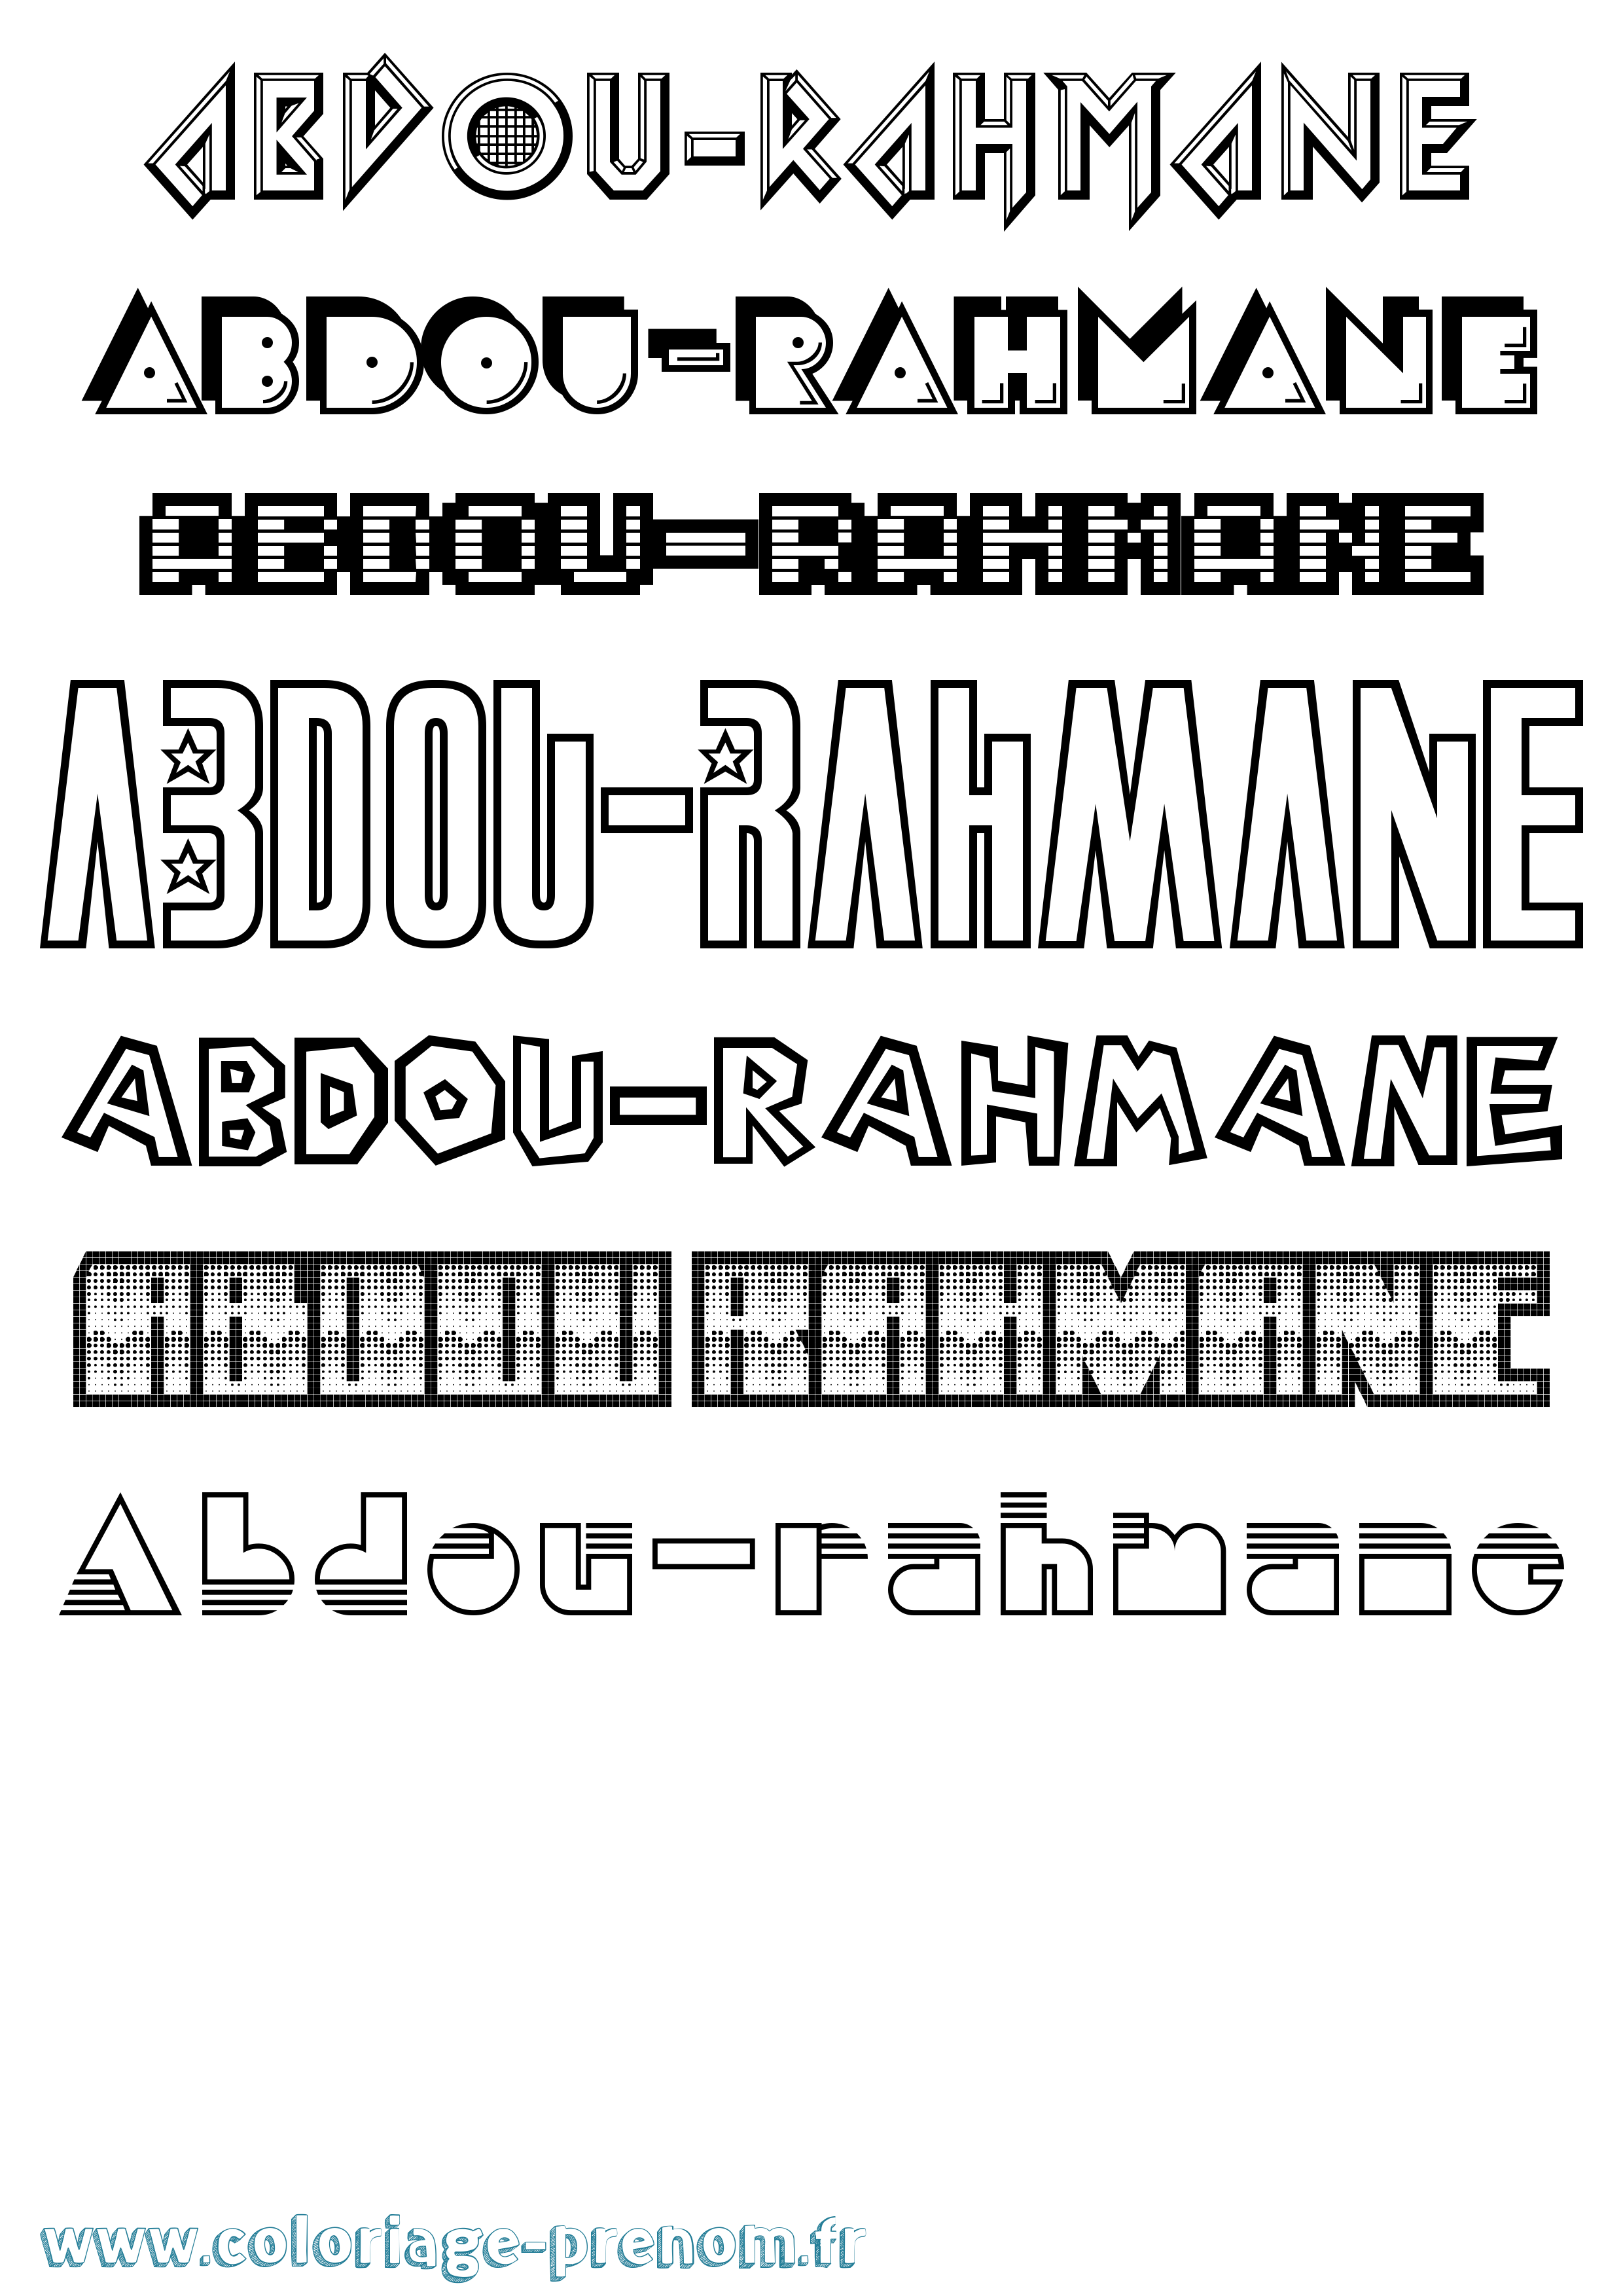 Coloriage prénom Abdou-Rahmane Jeux Vidéos